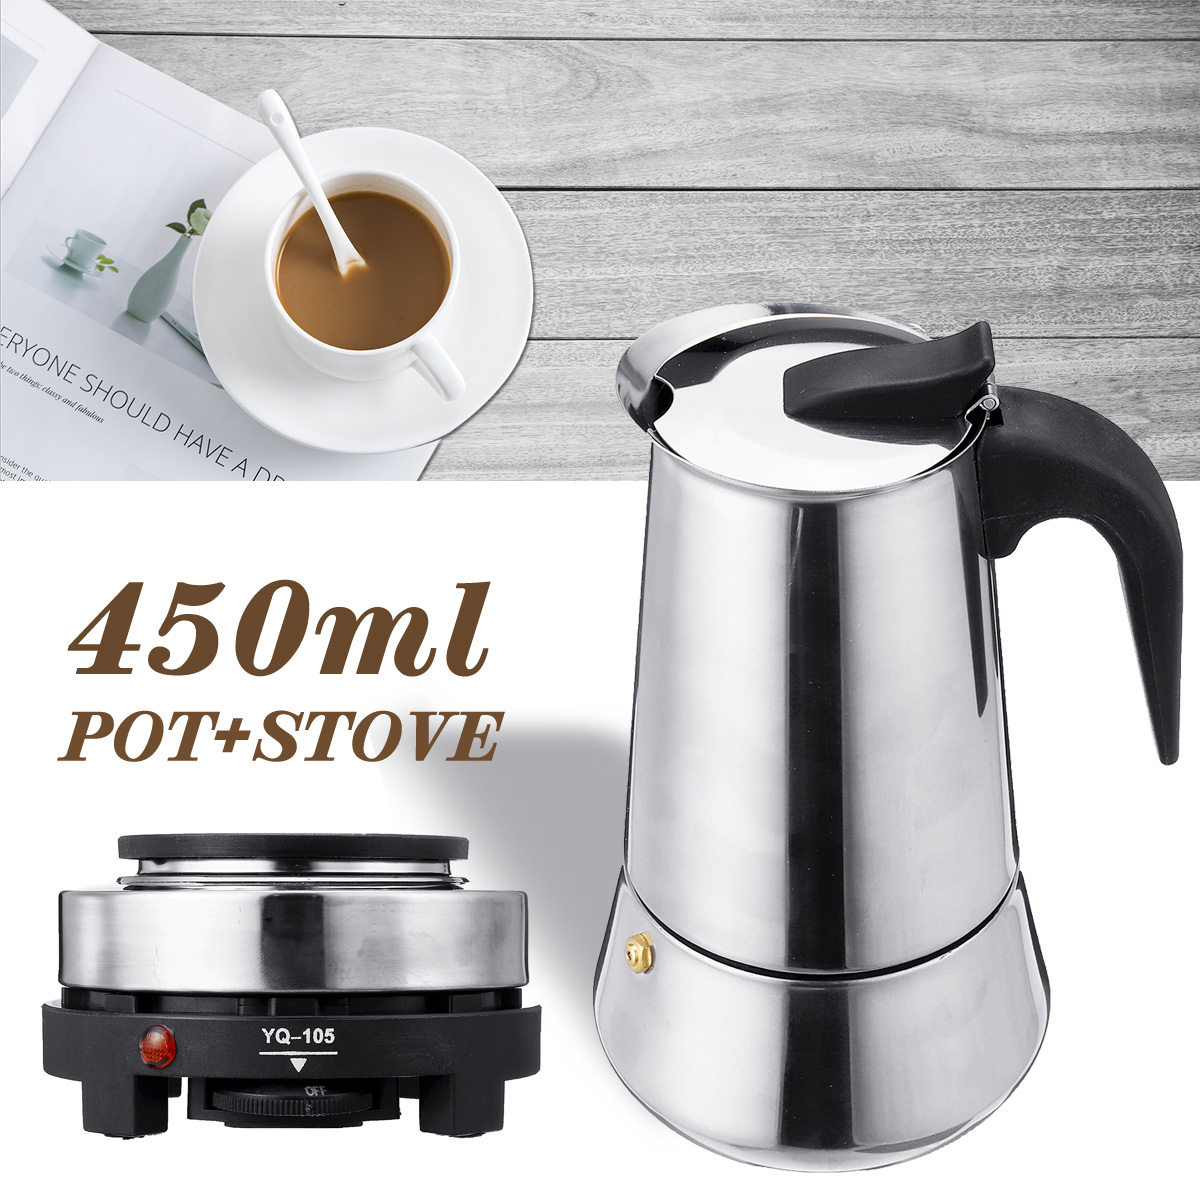 220V 500W 450ml Portable Coffee Espresso Pot Maker & Electric Stove Home Kitchen Tools 2